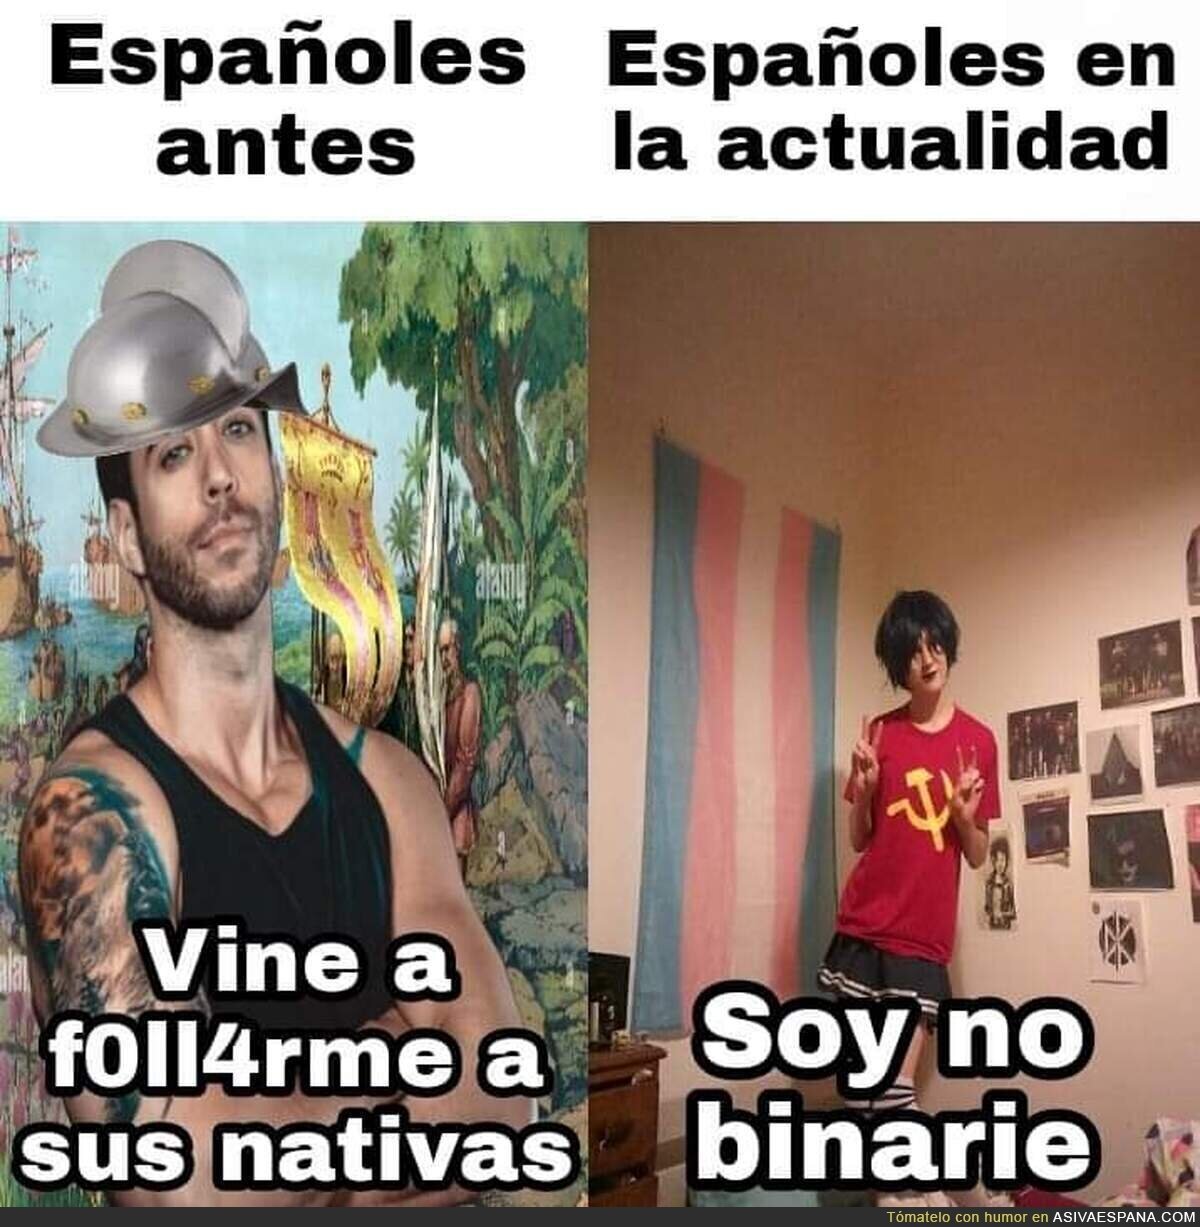 Los españoles han cambiado mucho